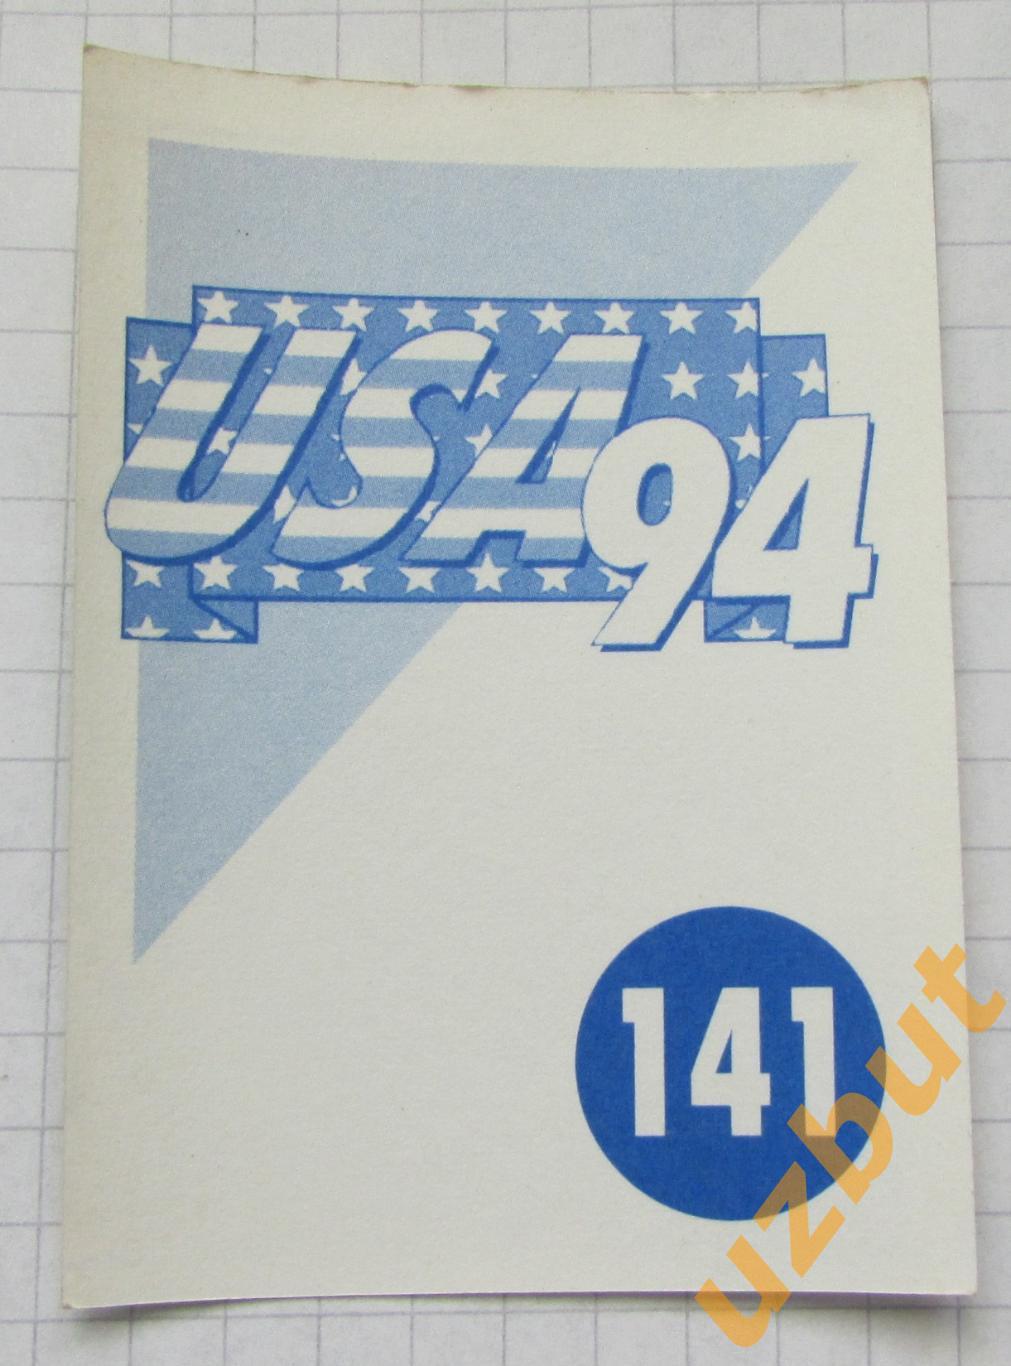 Наклейка Стадион Чикаго 1 № 141 Euroflash ЧМ 1994 США 1